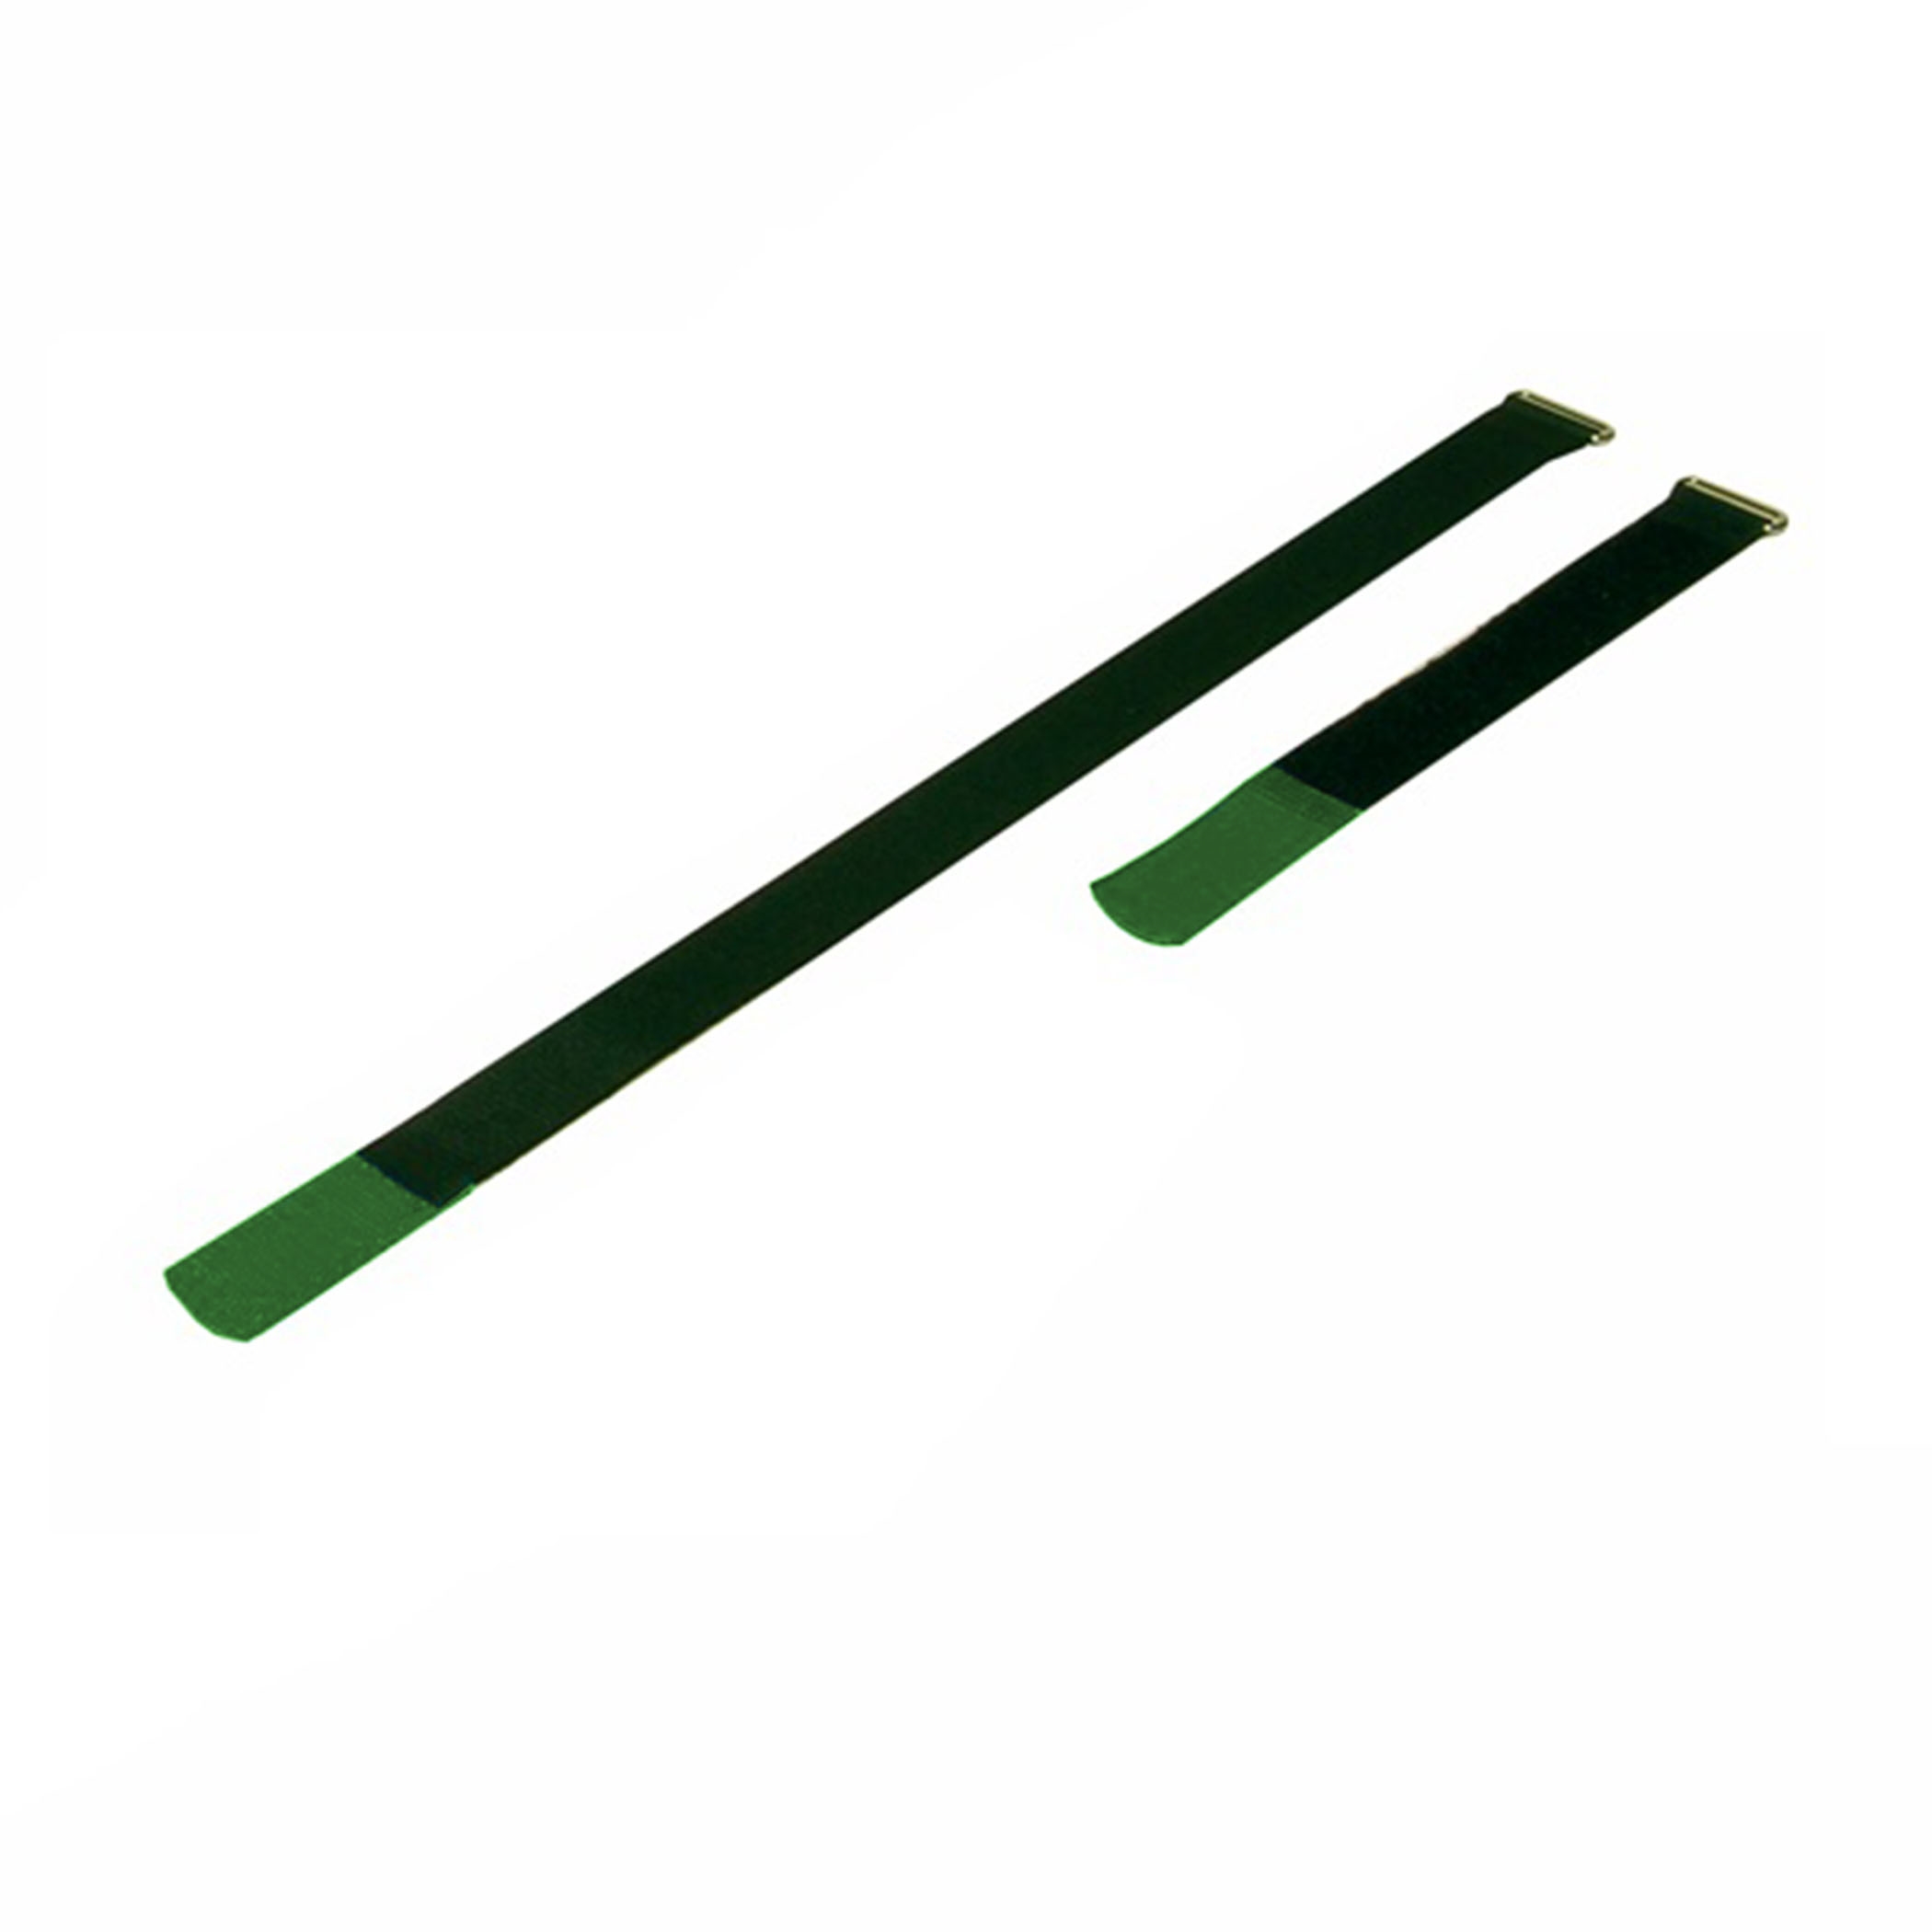 Kabelbinder 220x25mm met haaktip groen, (10 stuks) - a2522-820h